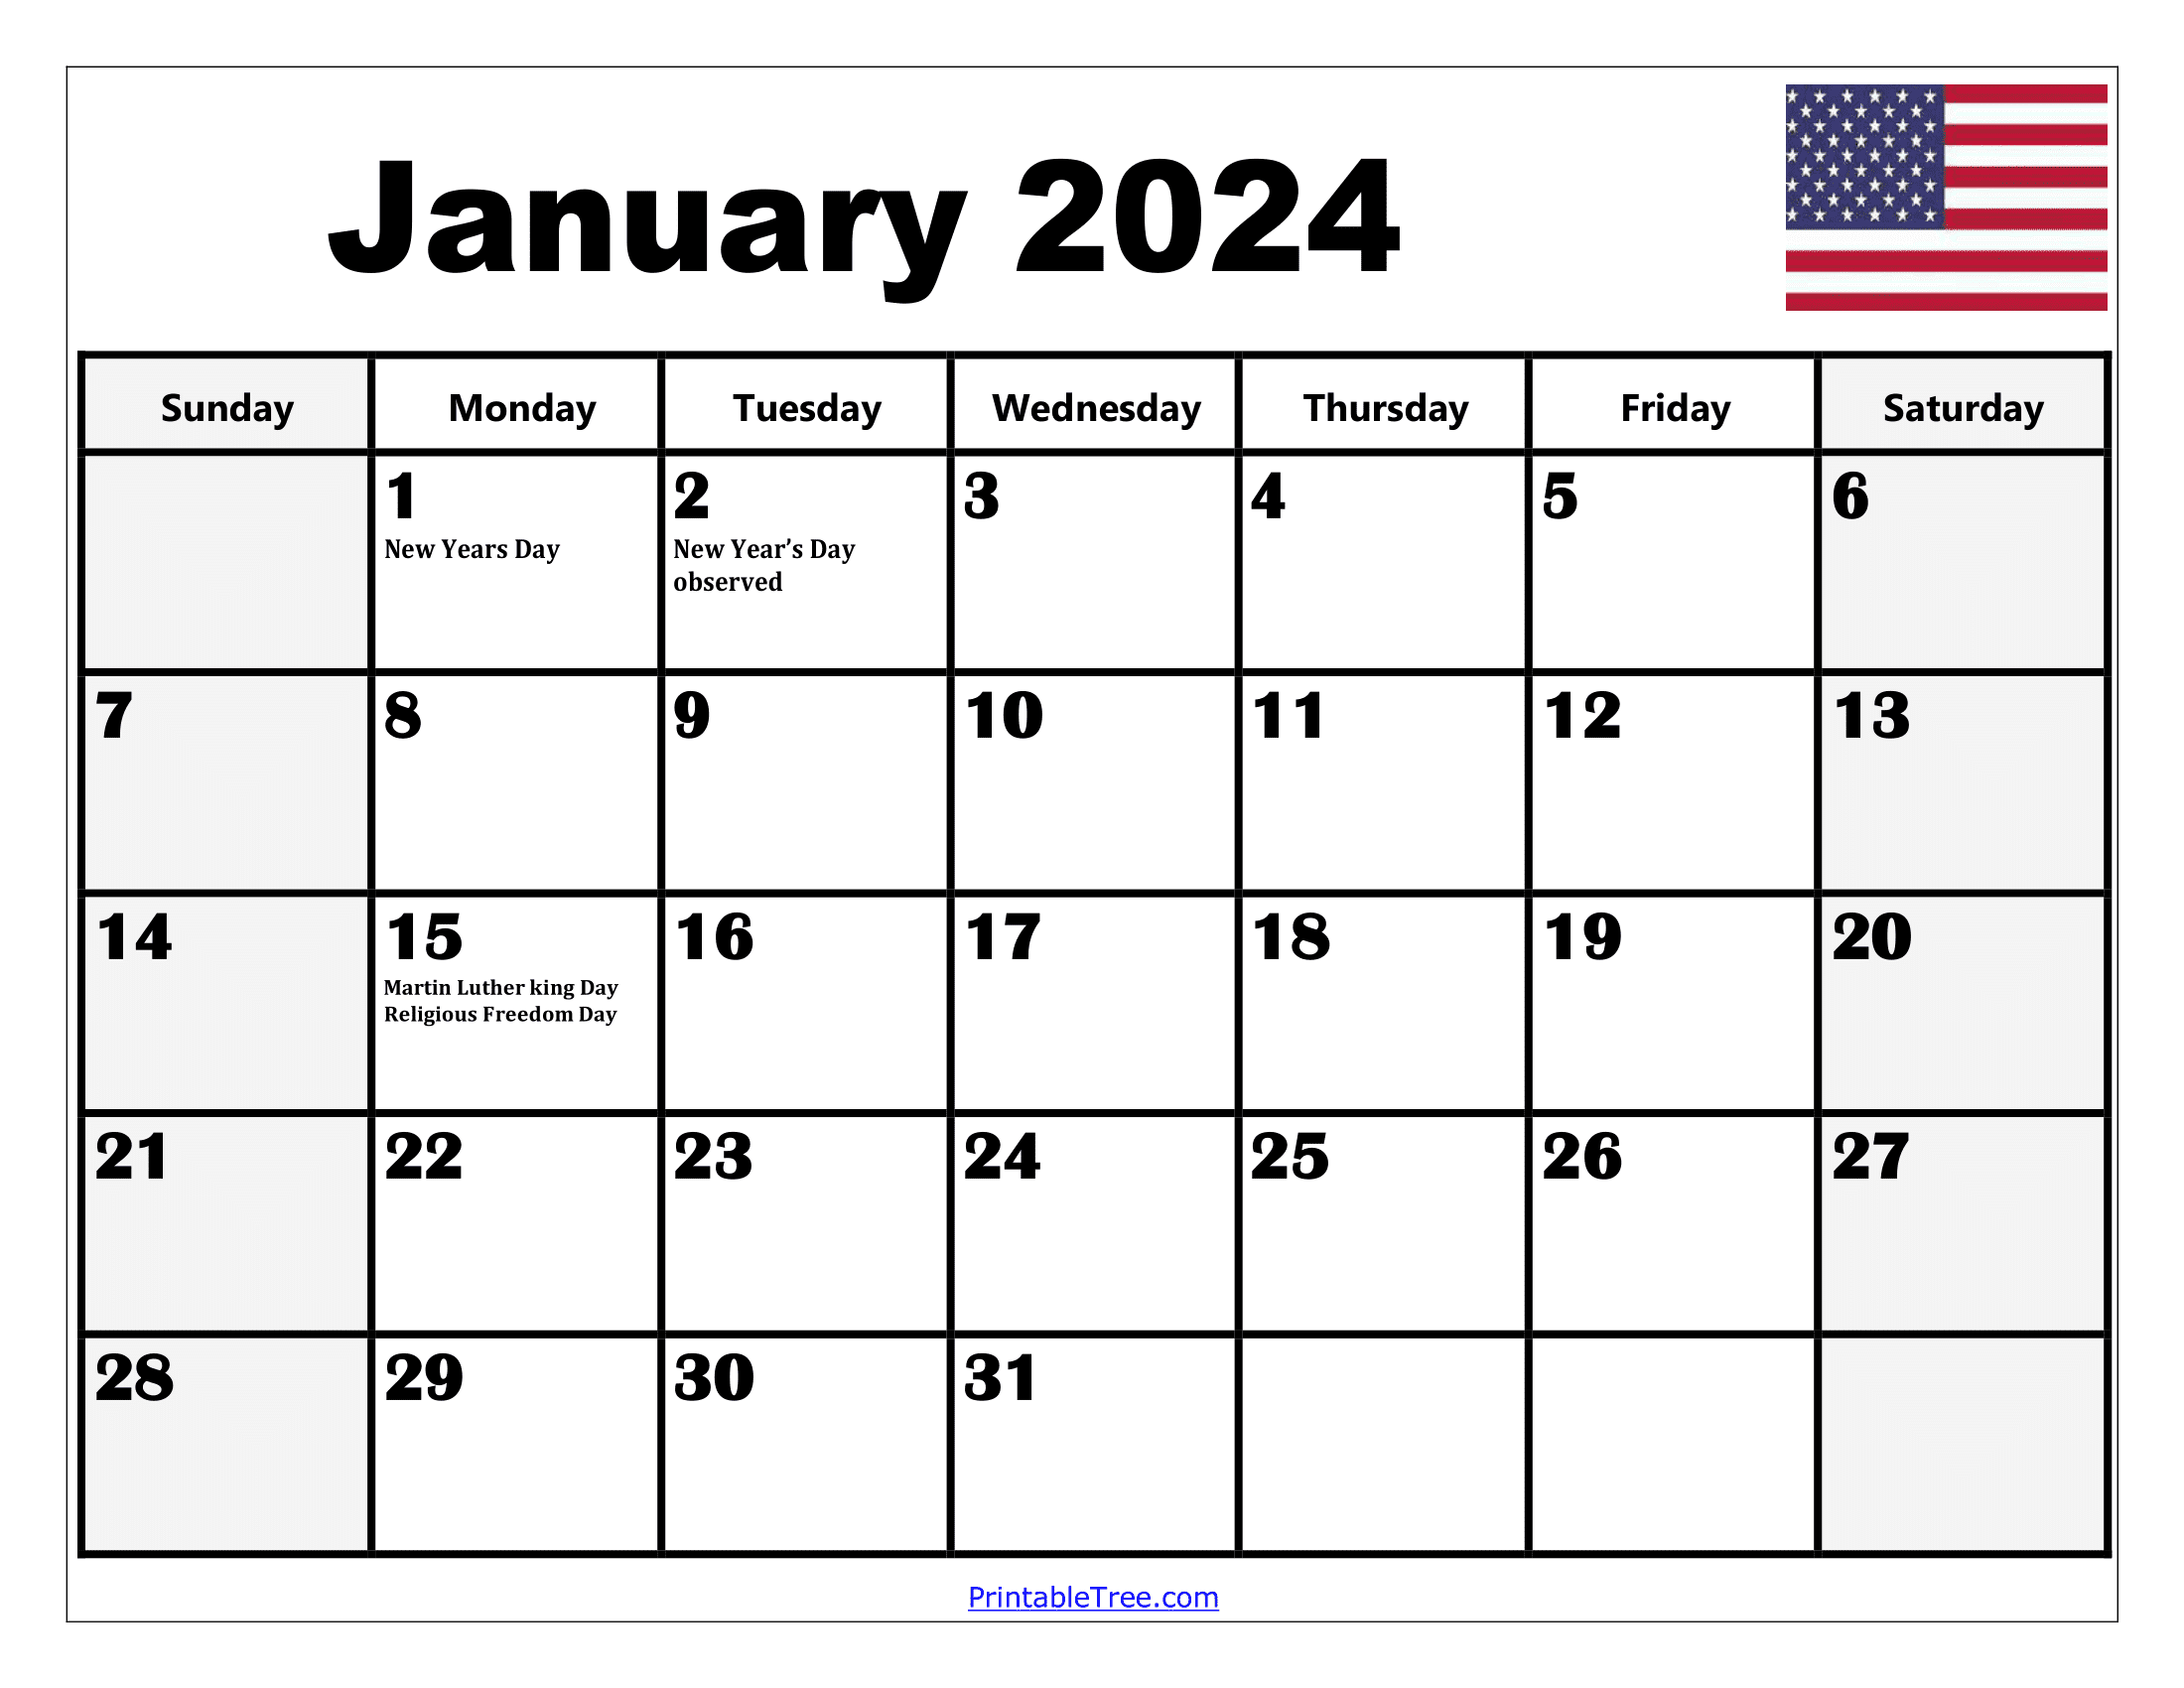 2024 Holiday Calendar Days Free Download Nov 2024 Calendar - Free Printable 2024 Calendar With Holidays And Notes